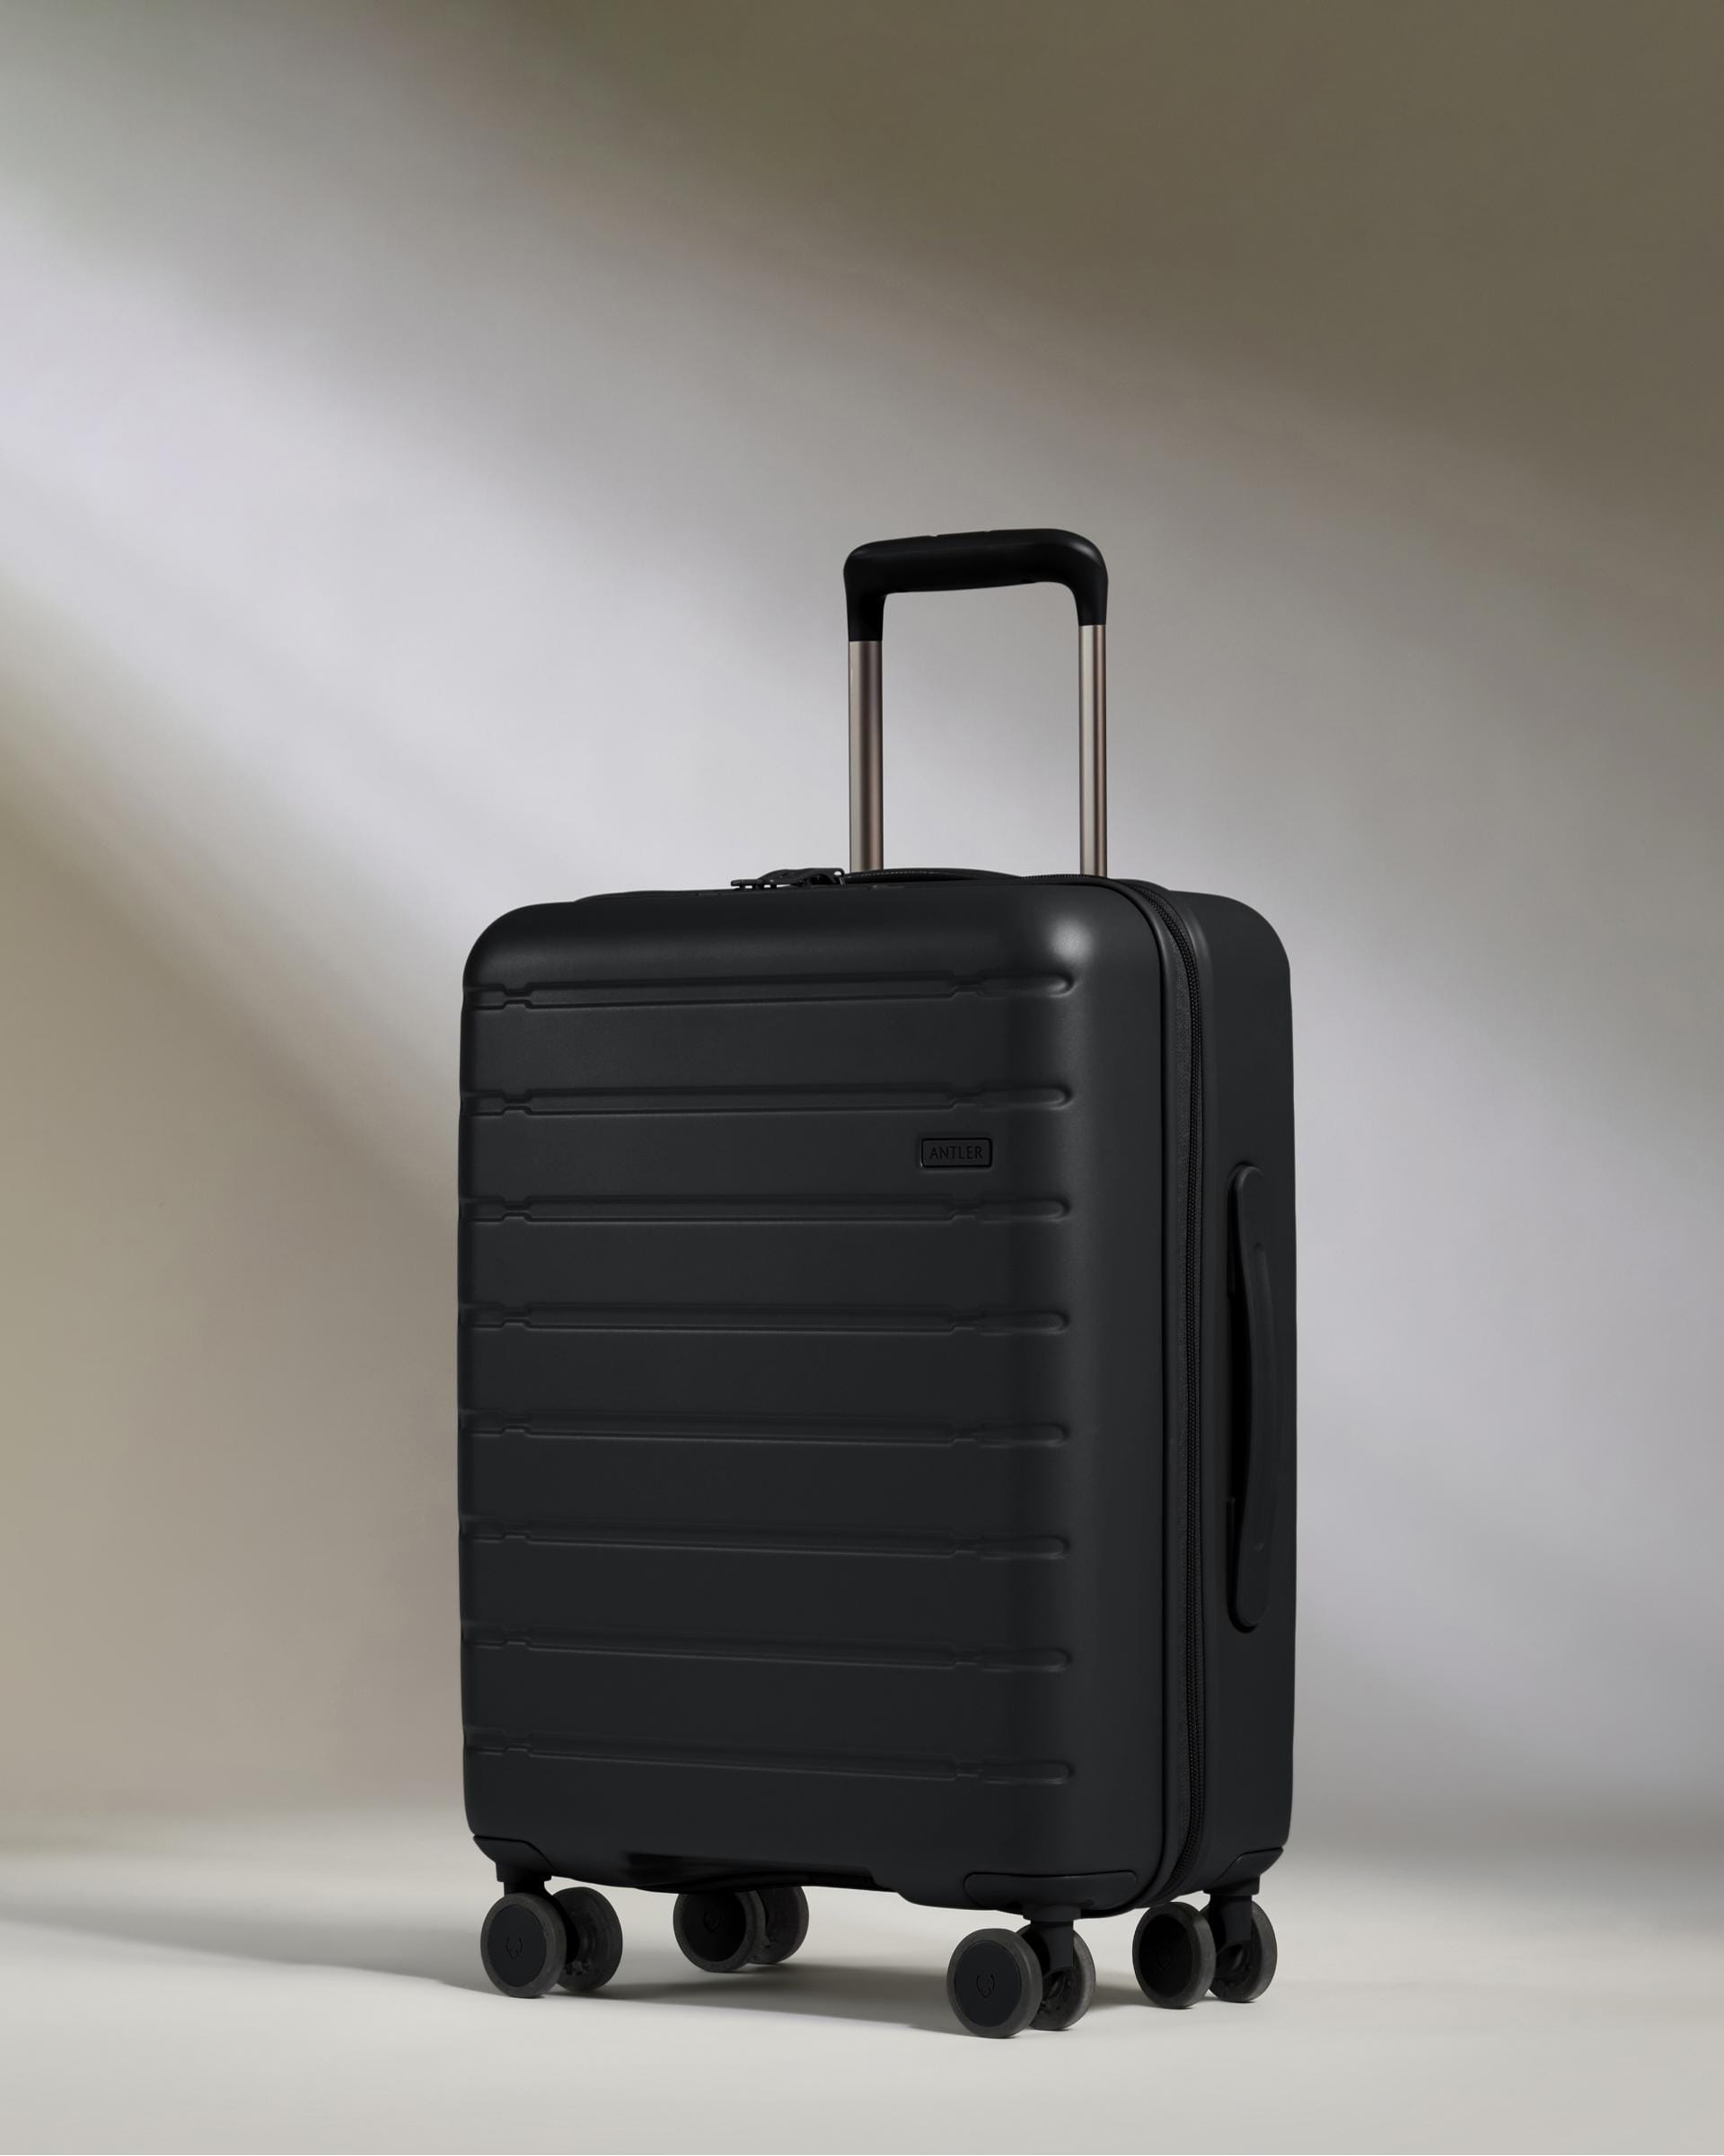 View Antler Stamford 20 Cabin Suitcase In Midnight Black Size 20cm x 402cm x 541cm information